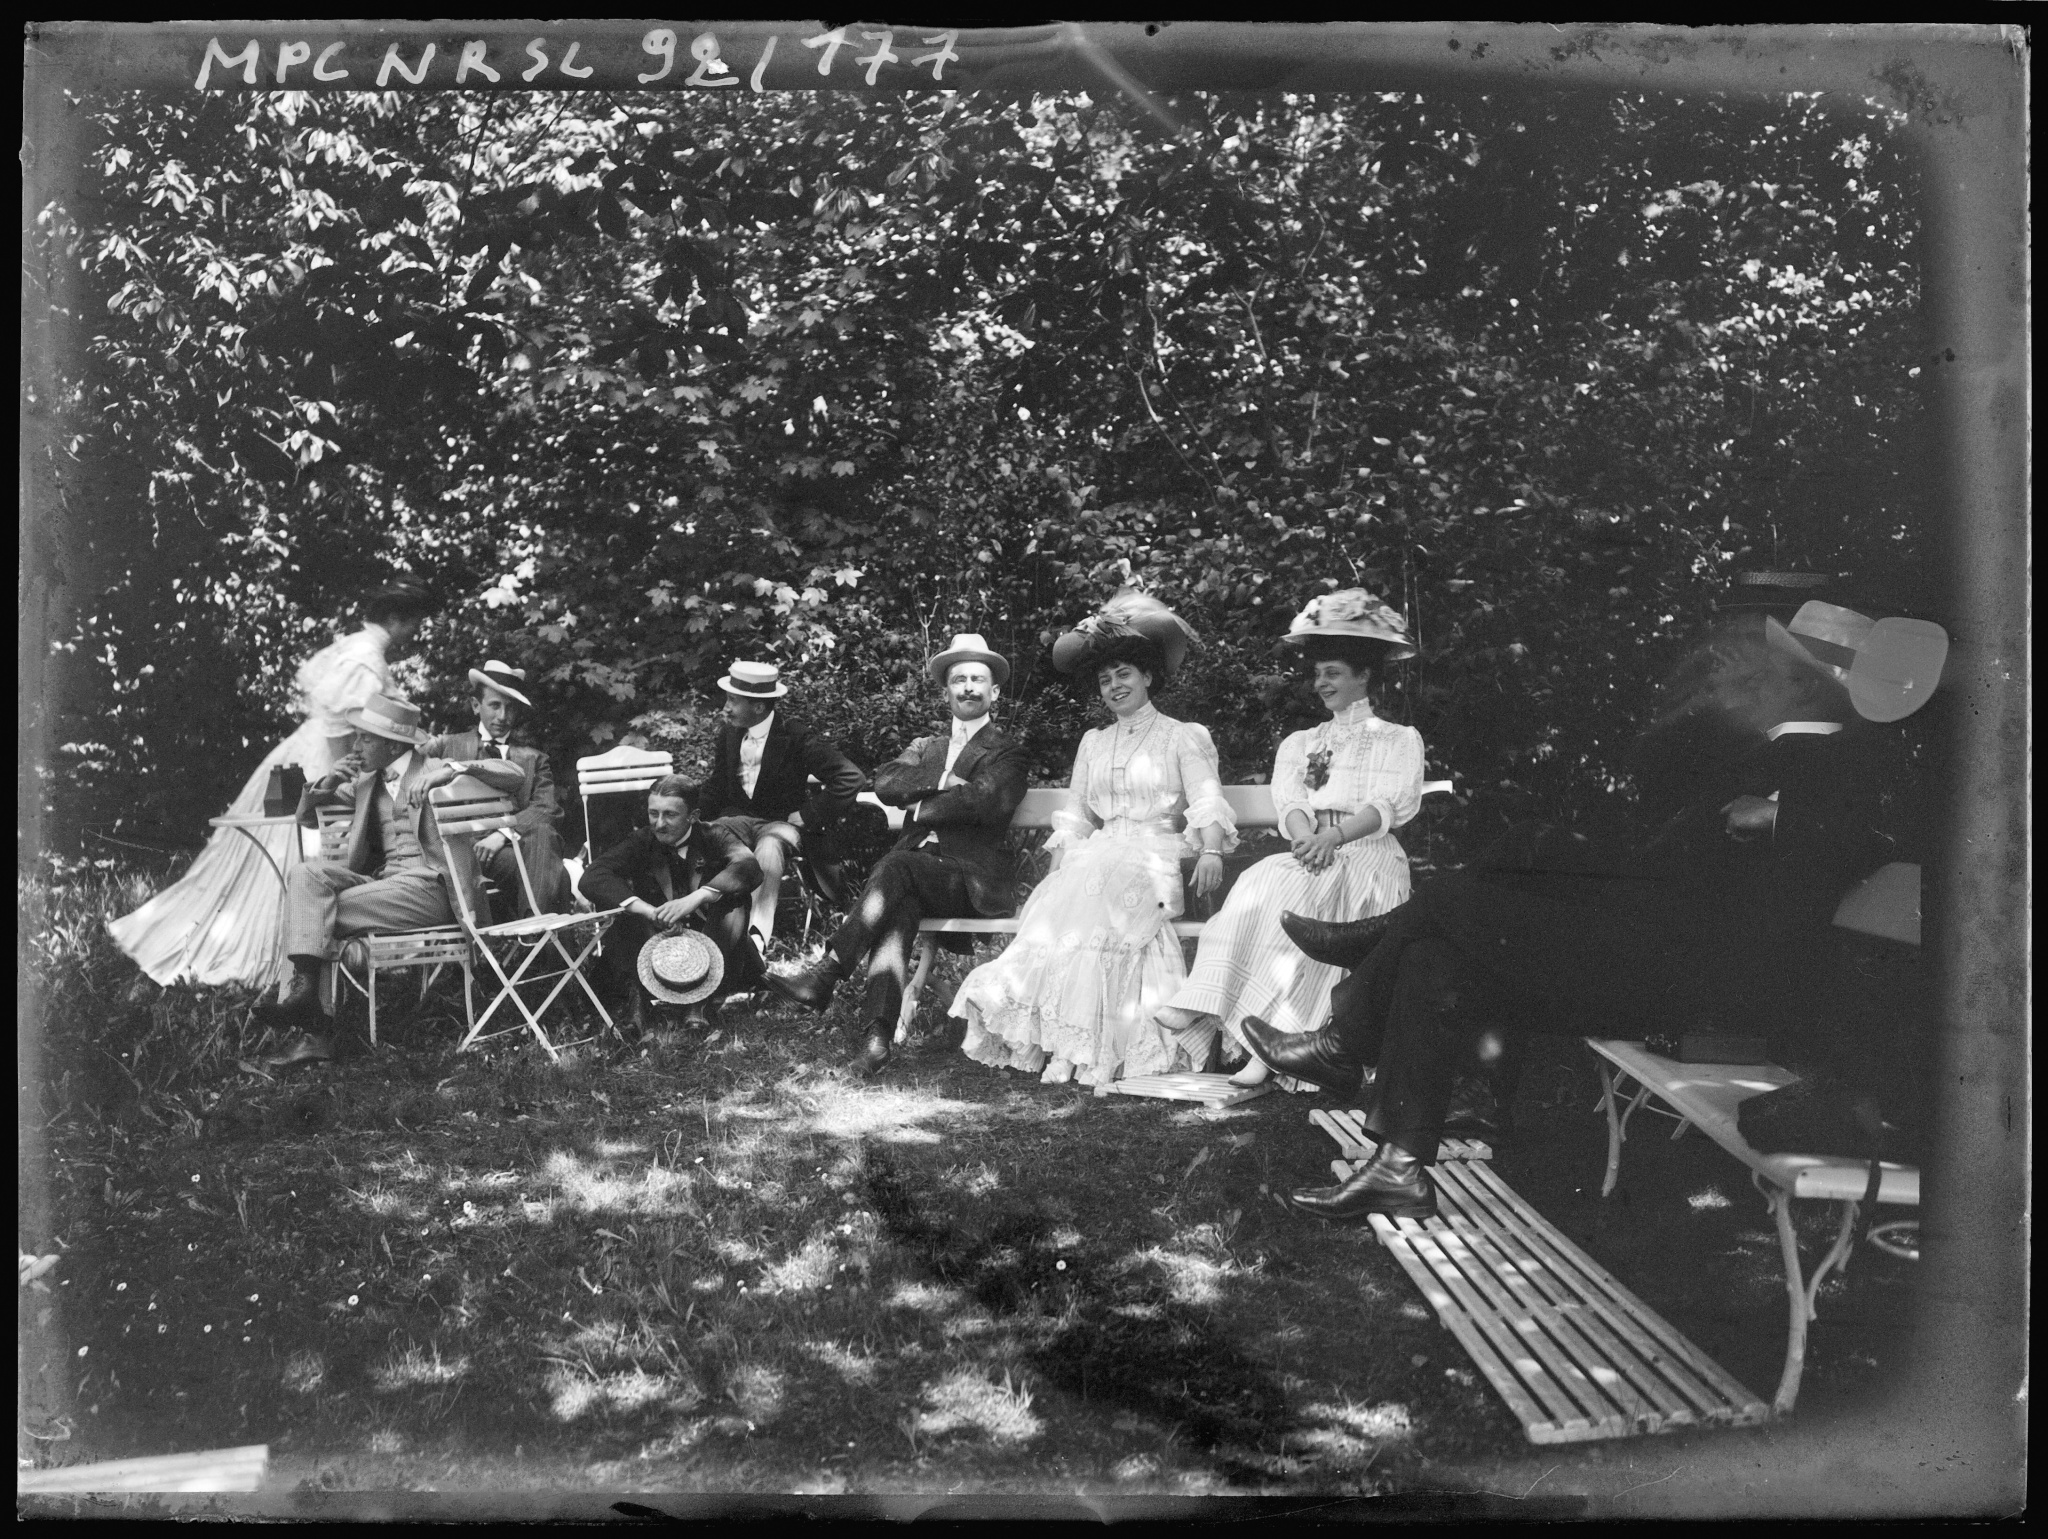 Groupe assis sur des bancs et chaises dans un jardin